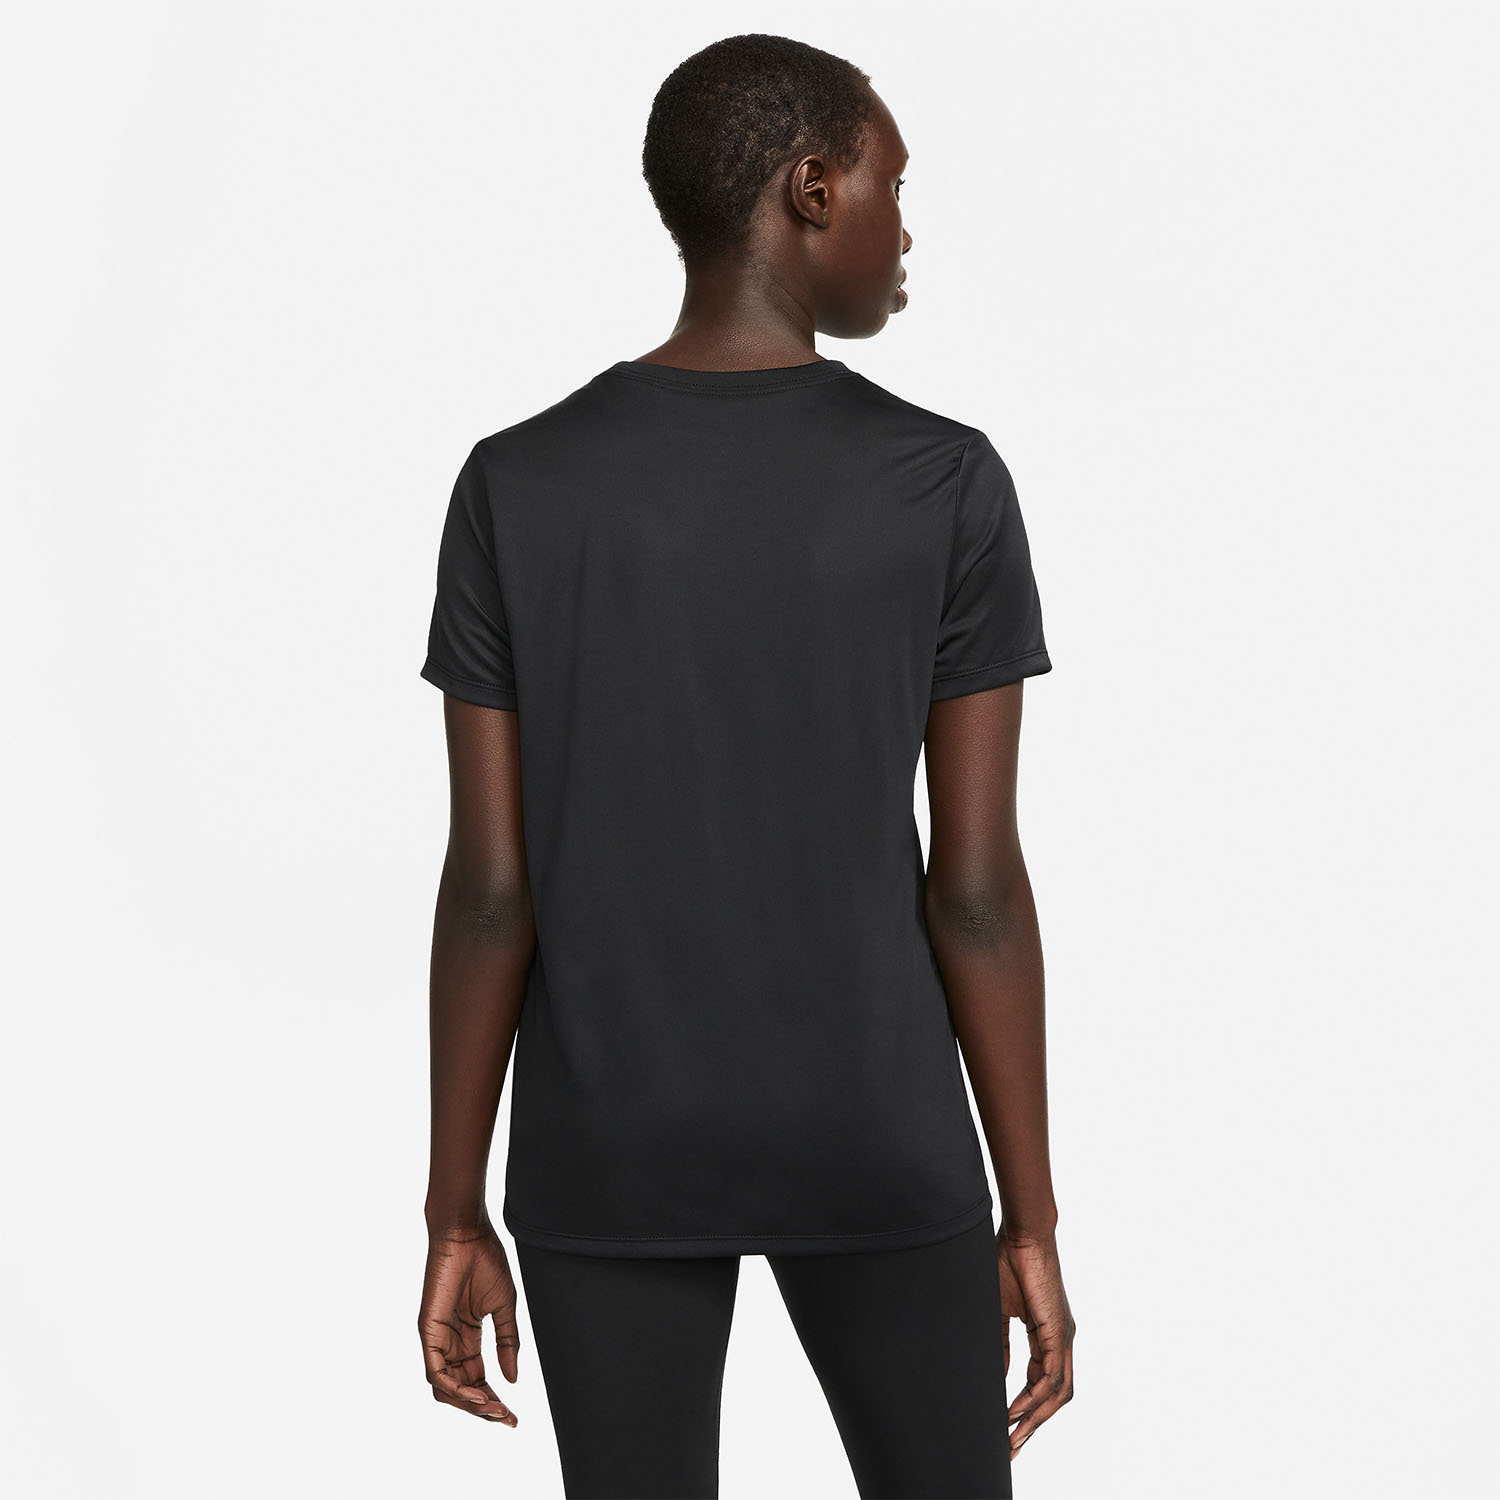 Nike Dri-FIT Swoosh Women's Training T-Shirt - Black/White